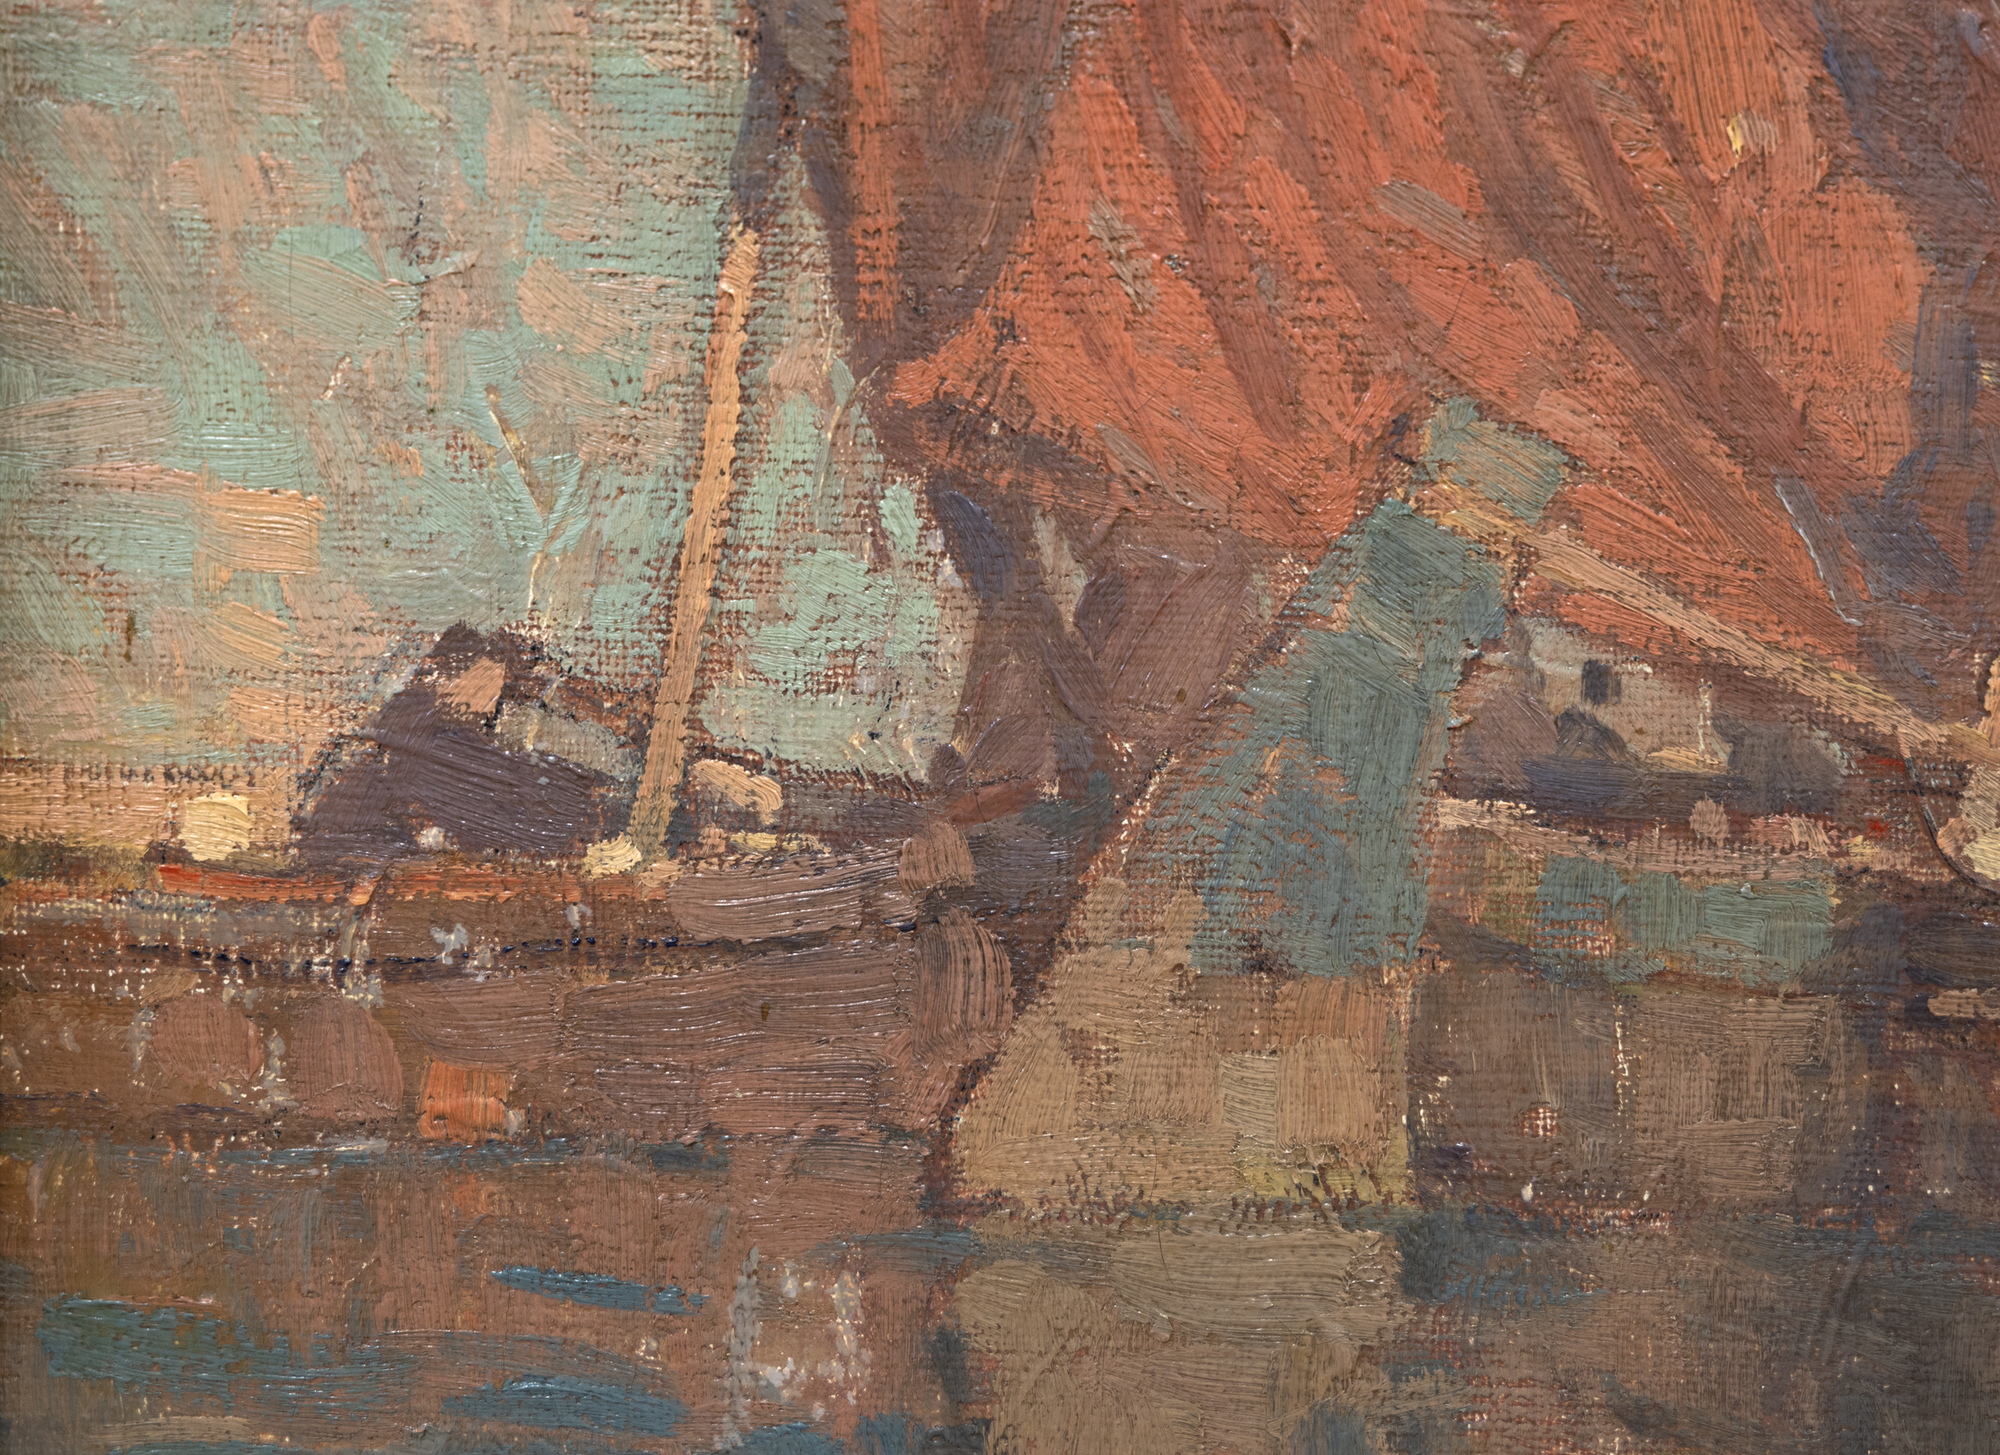 EDGAR ALWIN PAYNE - Venezianische Boote auf Sotto Marino - Öl auf Platte - 23 3/8 x 26 1/4 Zoll.